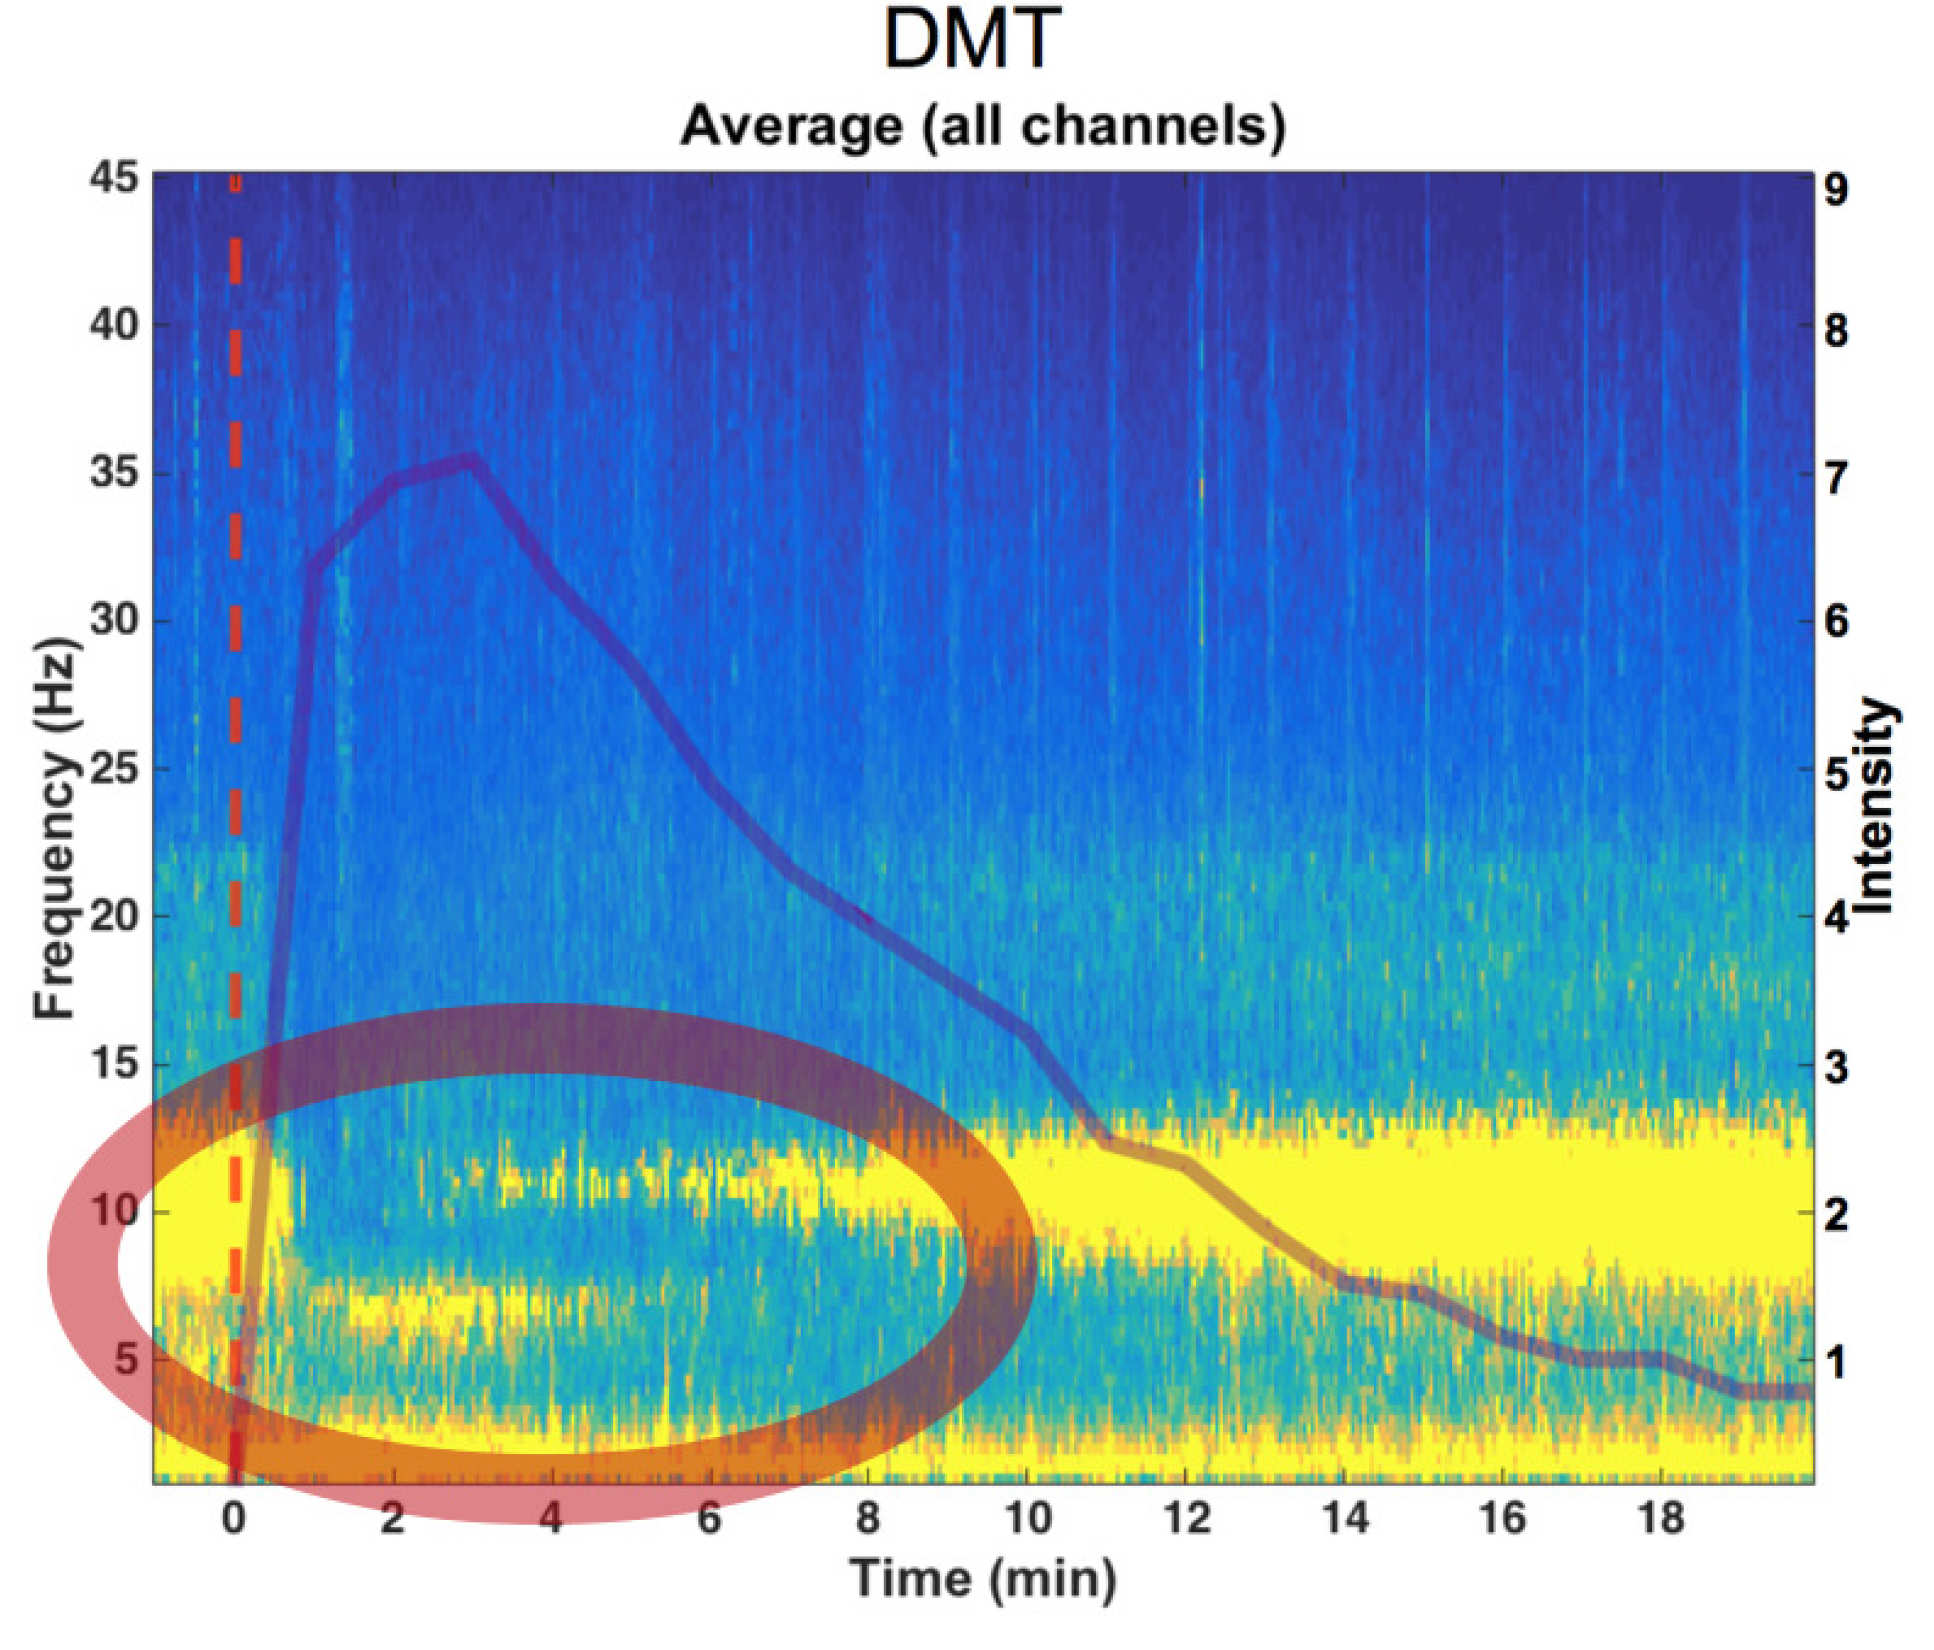 DMT altera significativamente la actividad eléctrica en el cerebro, caracterizada por un marcado descenso en las ondas alfa y un aumento en las ondas delta y theta. El círculo rojo muestra un aumento en las ondas delta y theta de baja frecuencia (Crédito: Chris Timmermann)